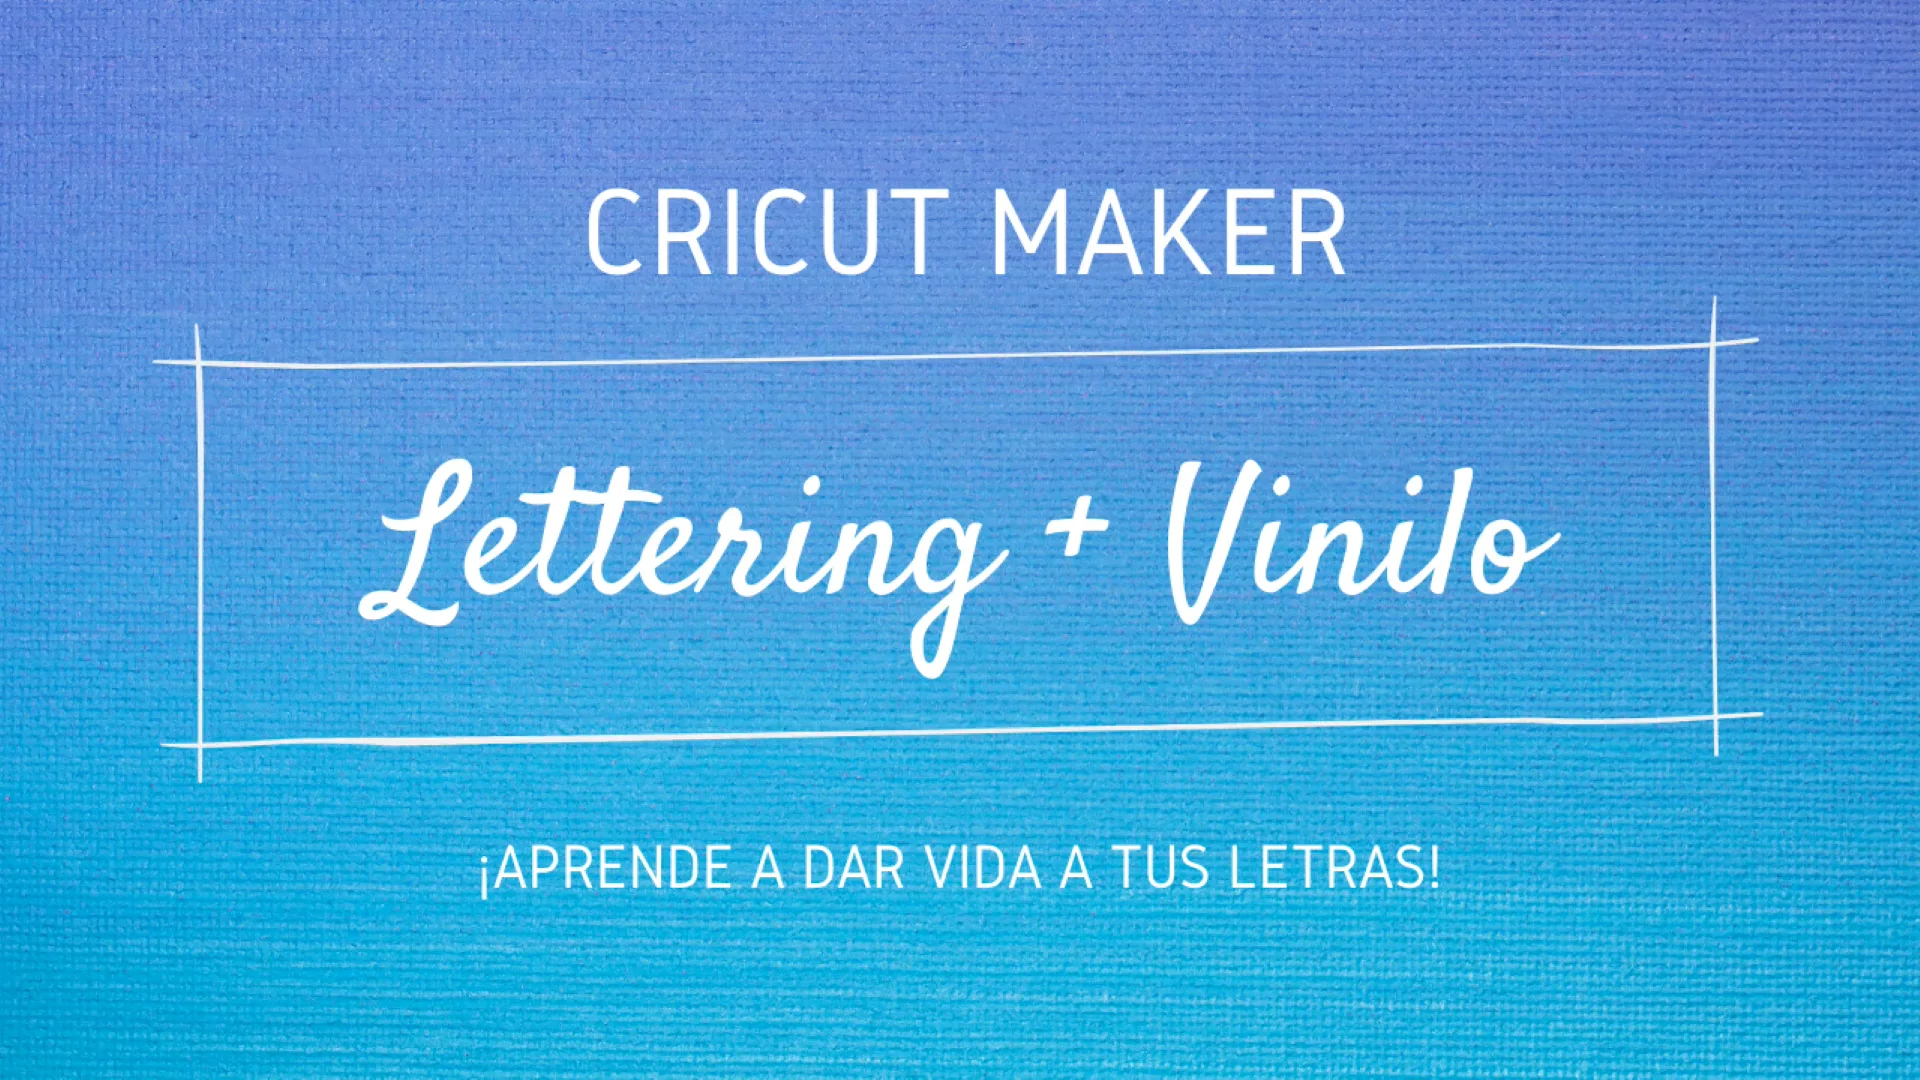 Curso de lettering en vinilo con Cricut Maker ✂️ - Academia Cricut